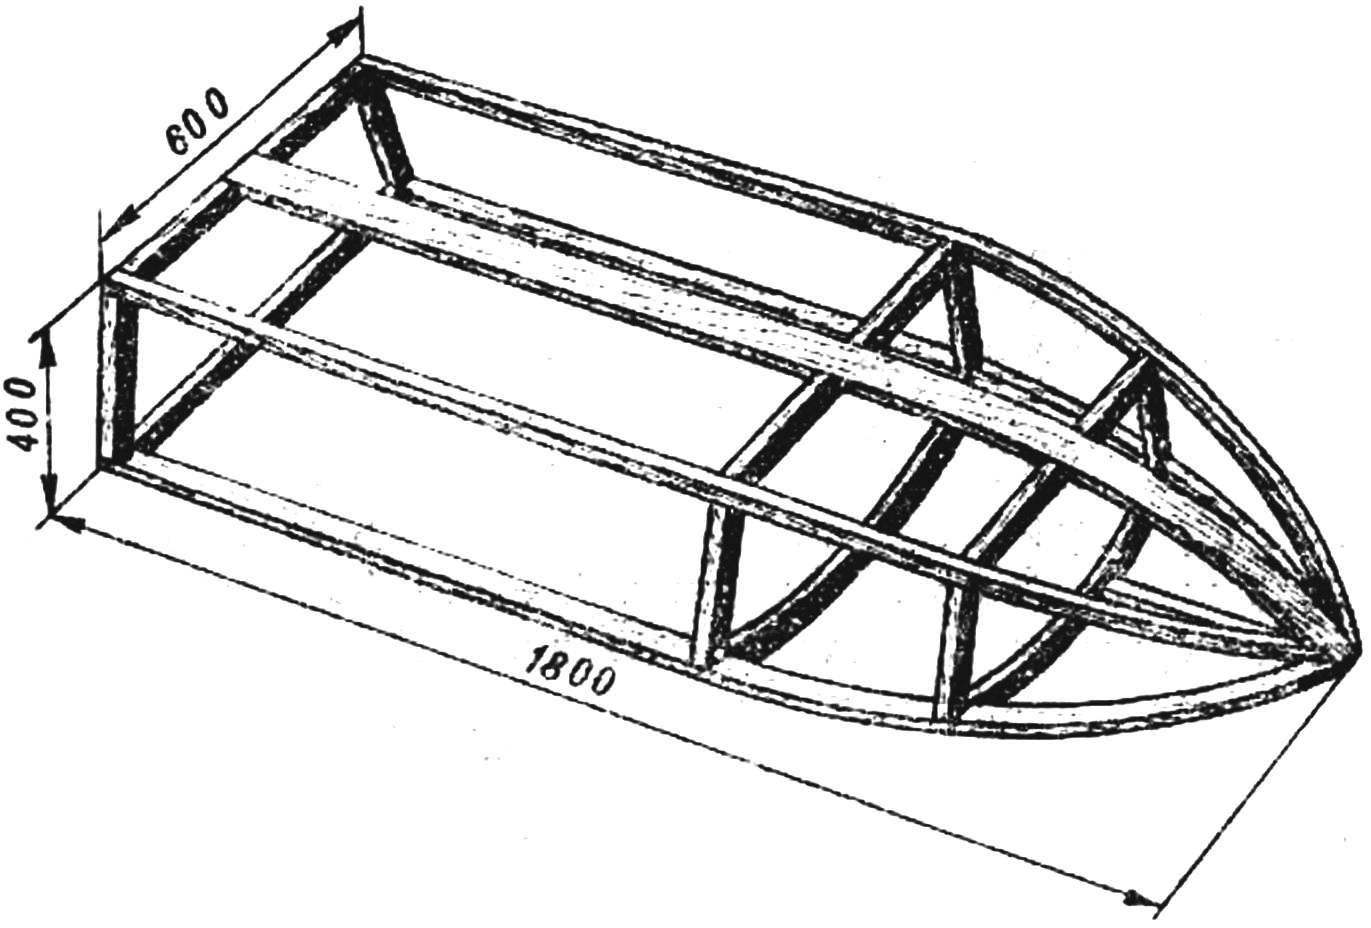 Лодка из фанеры своими руками — чертежи выкройки, как сделать самодельную фанерную лодку